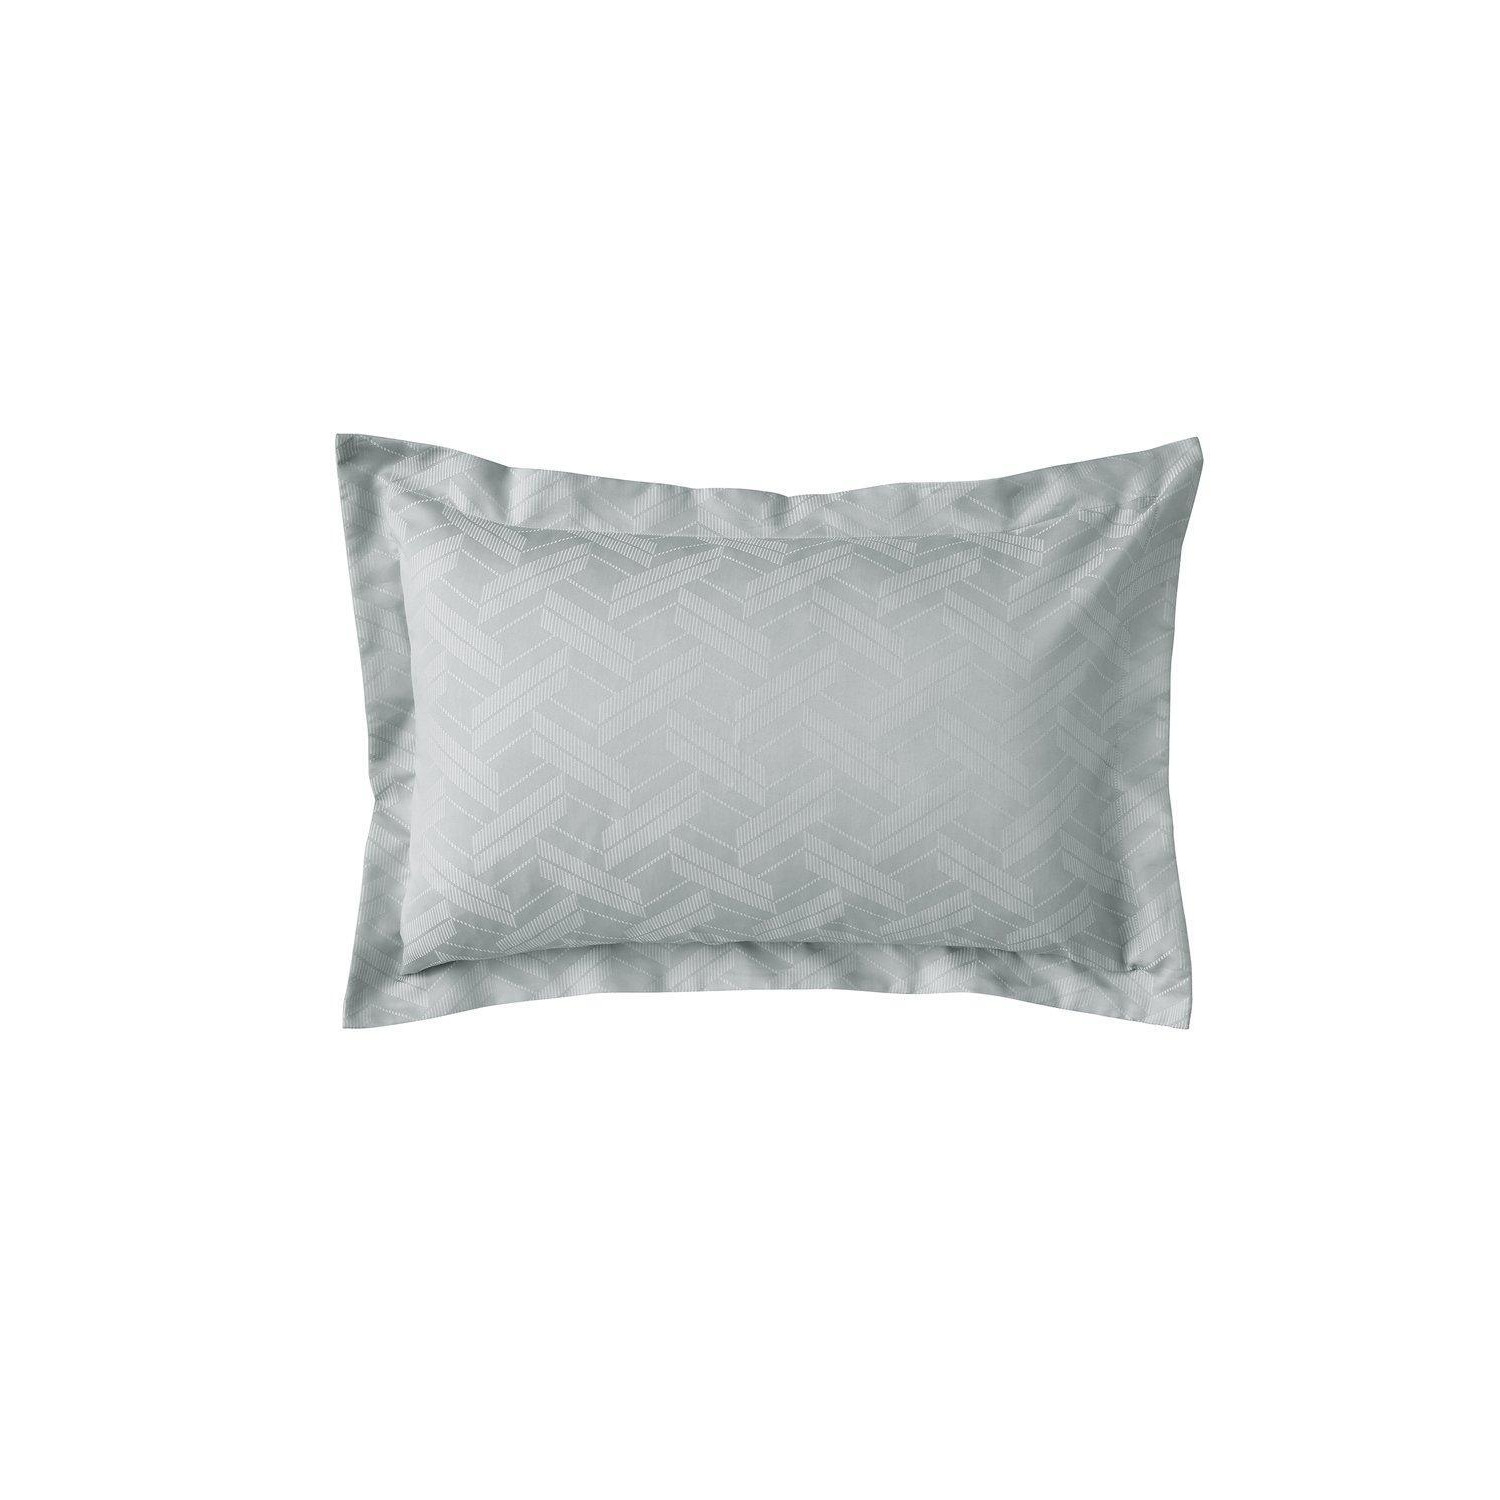 'Astoria' Oxford Pillowcase - image 1